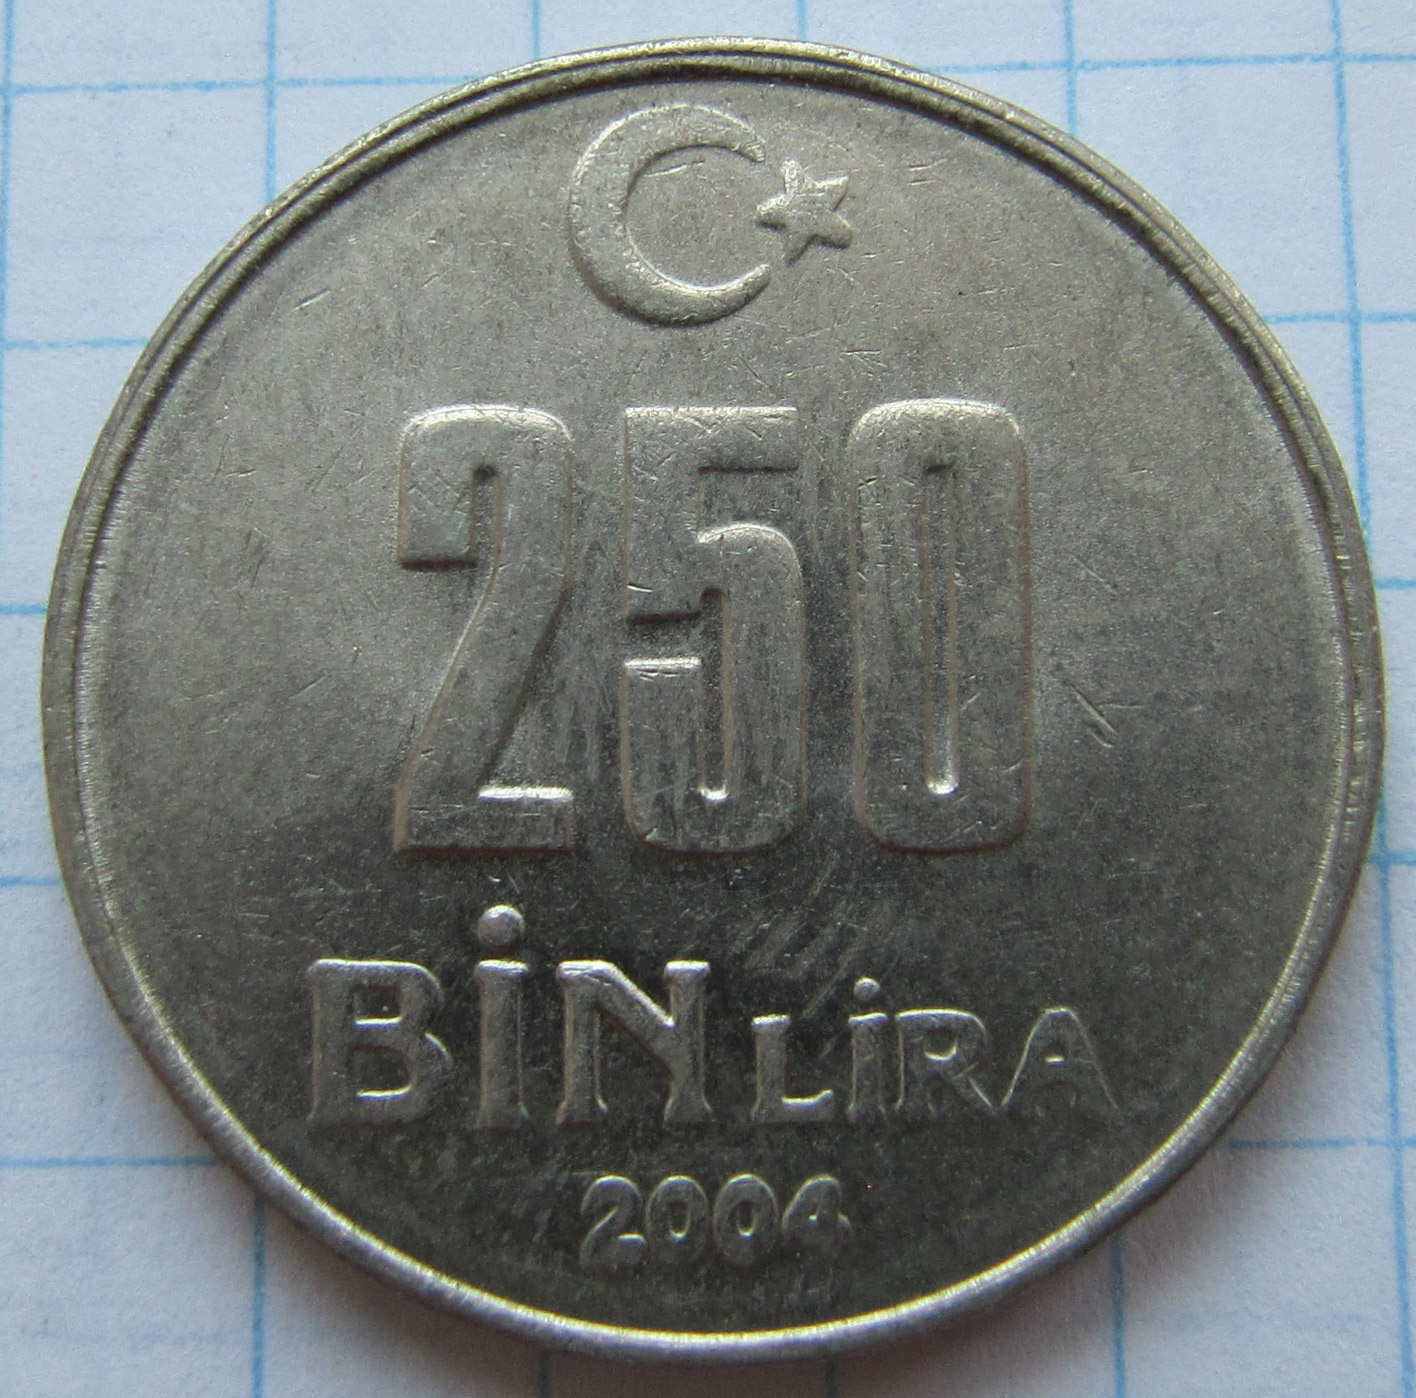 7000 лир в рублях